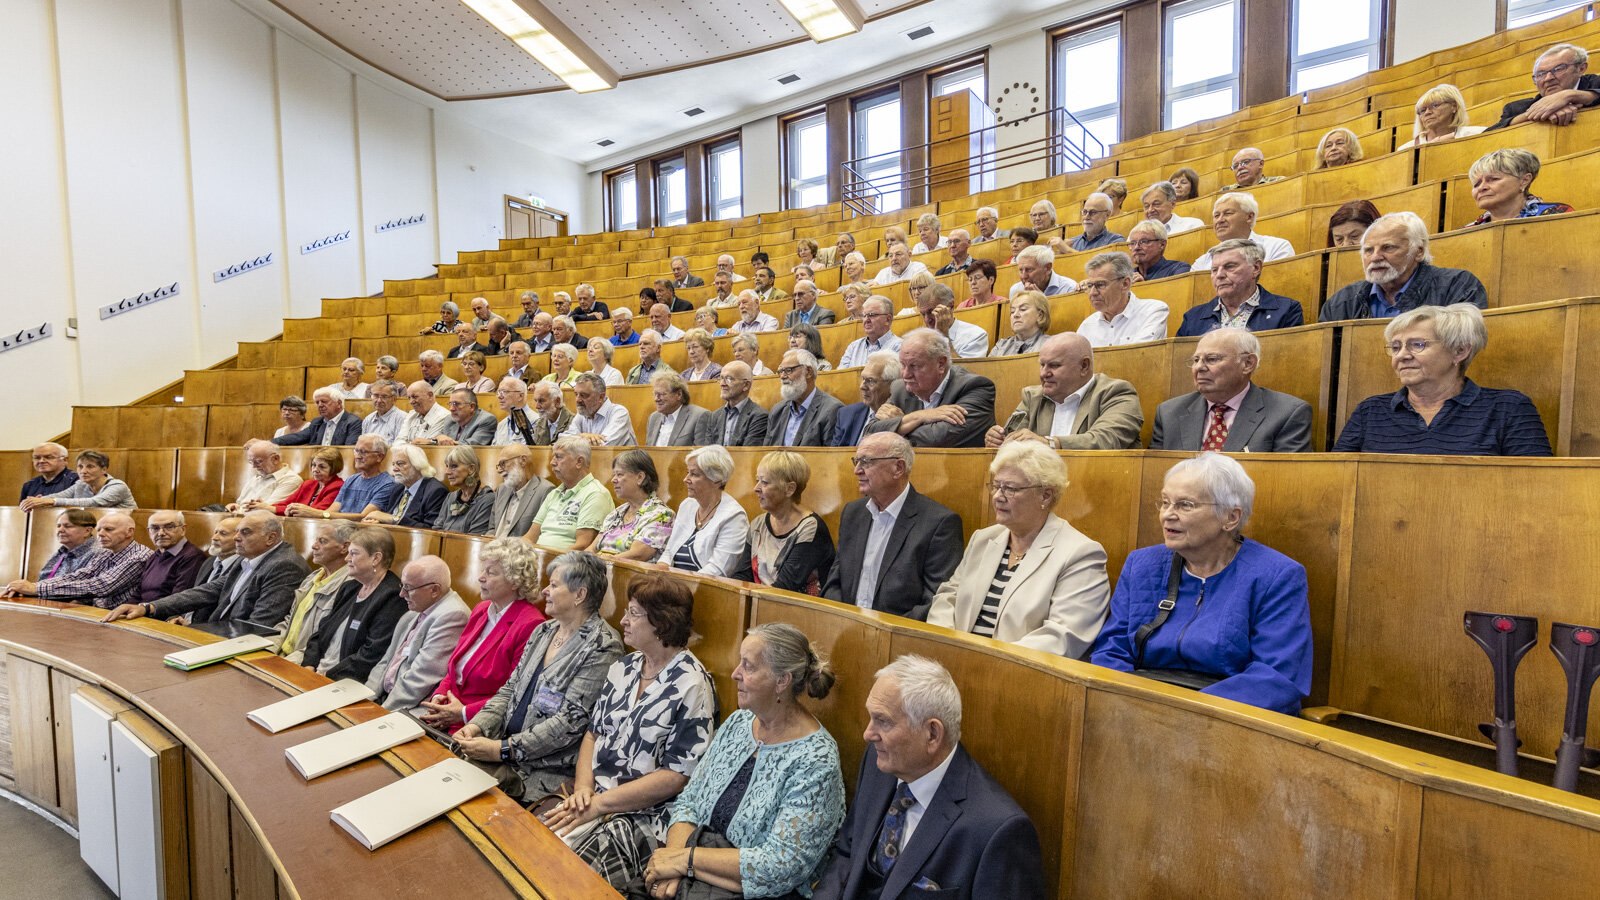 Mehrere ältere Personen sitzen in einem Hörsaal.